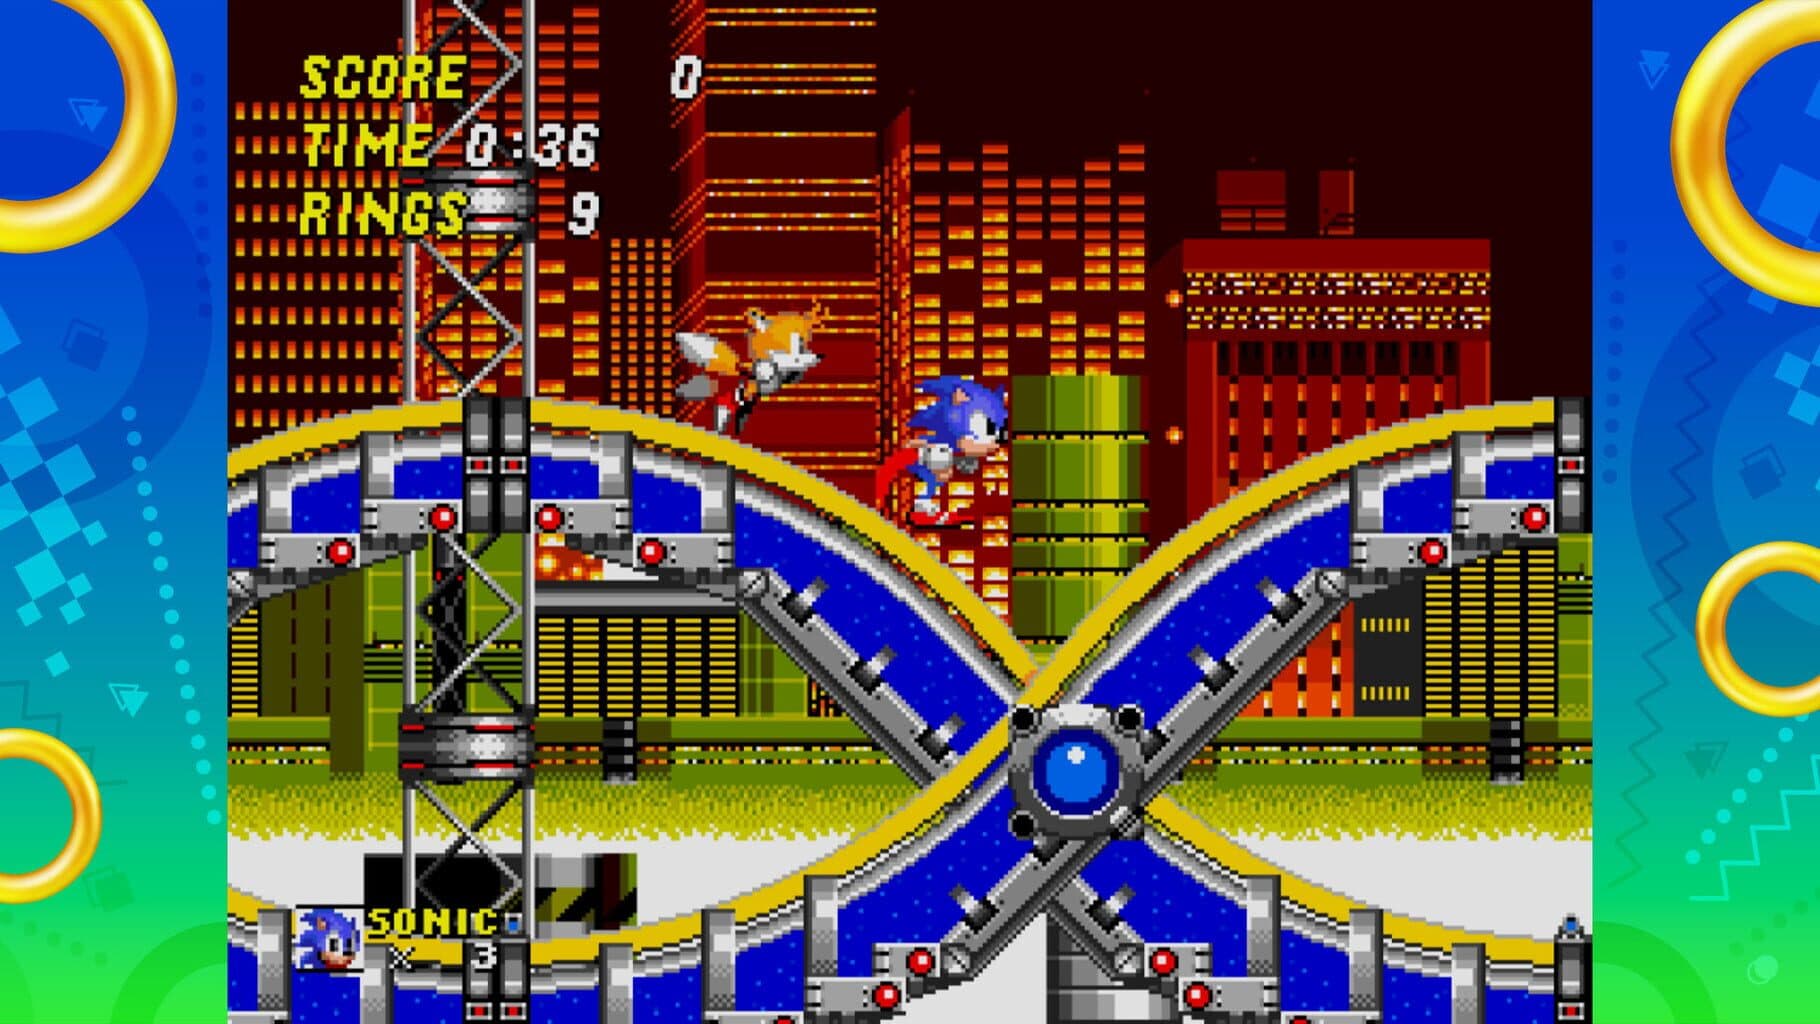 Sonic Origins Image